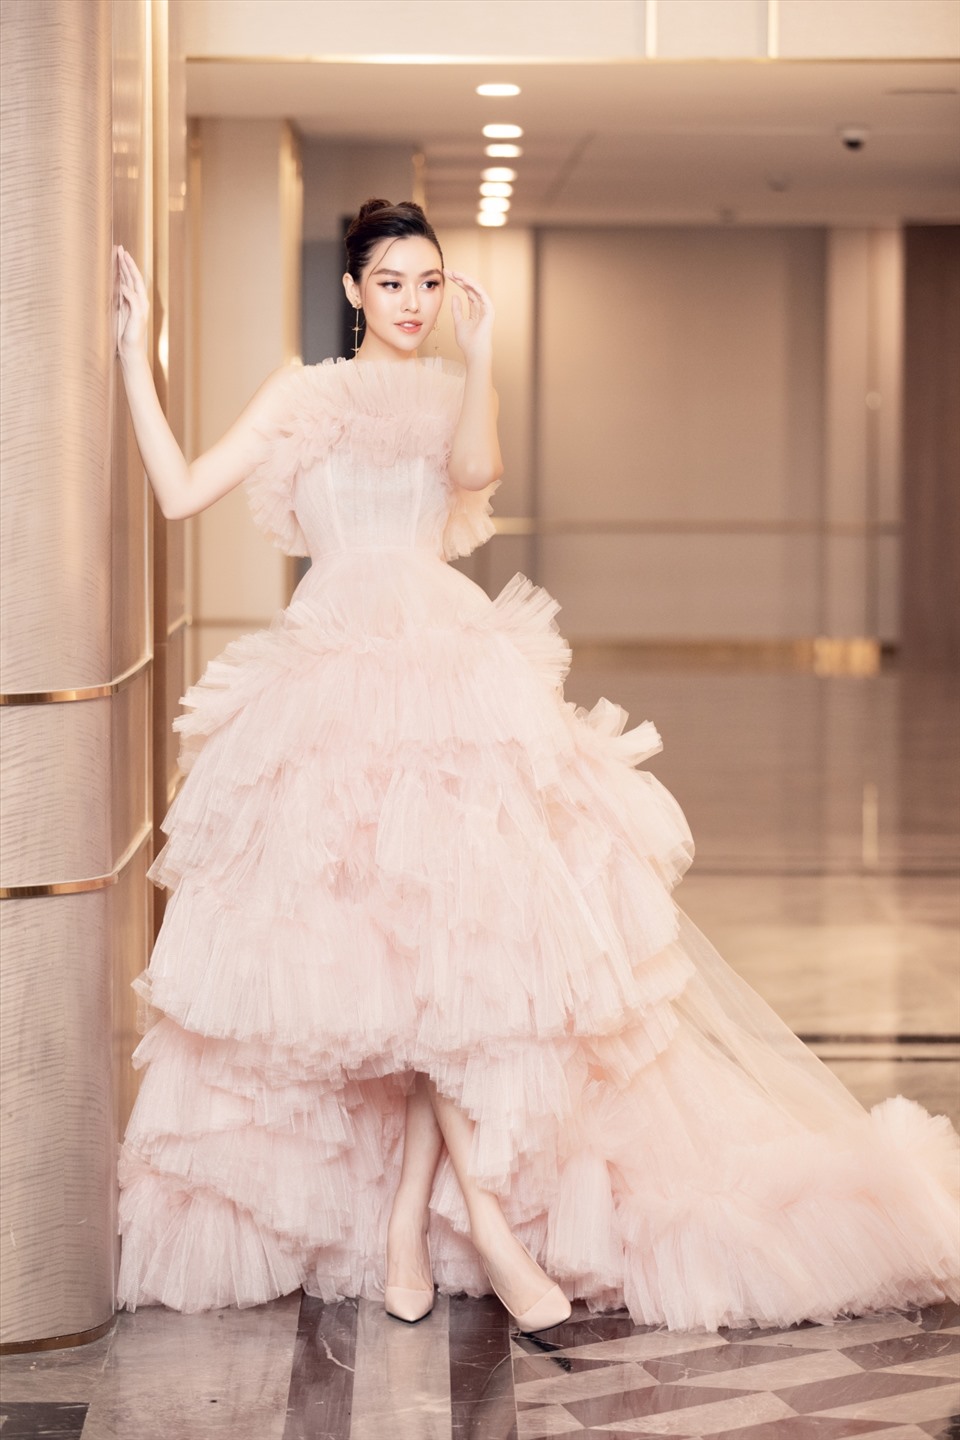 Với thiết kế xếp ly phồng theo tầng cùng màu hồng pastel ngọt ngào, chiếc váy đã giúp Á hậu Tường San ghi điểm với phong cách nhẹ nhàng, nữ tính.